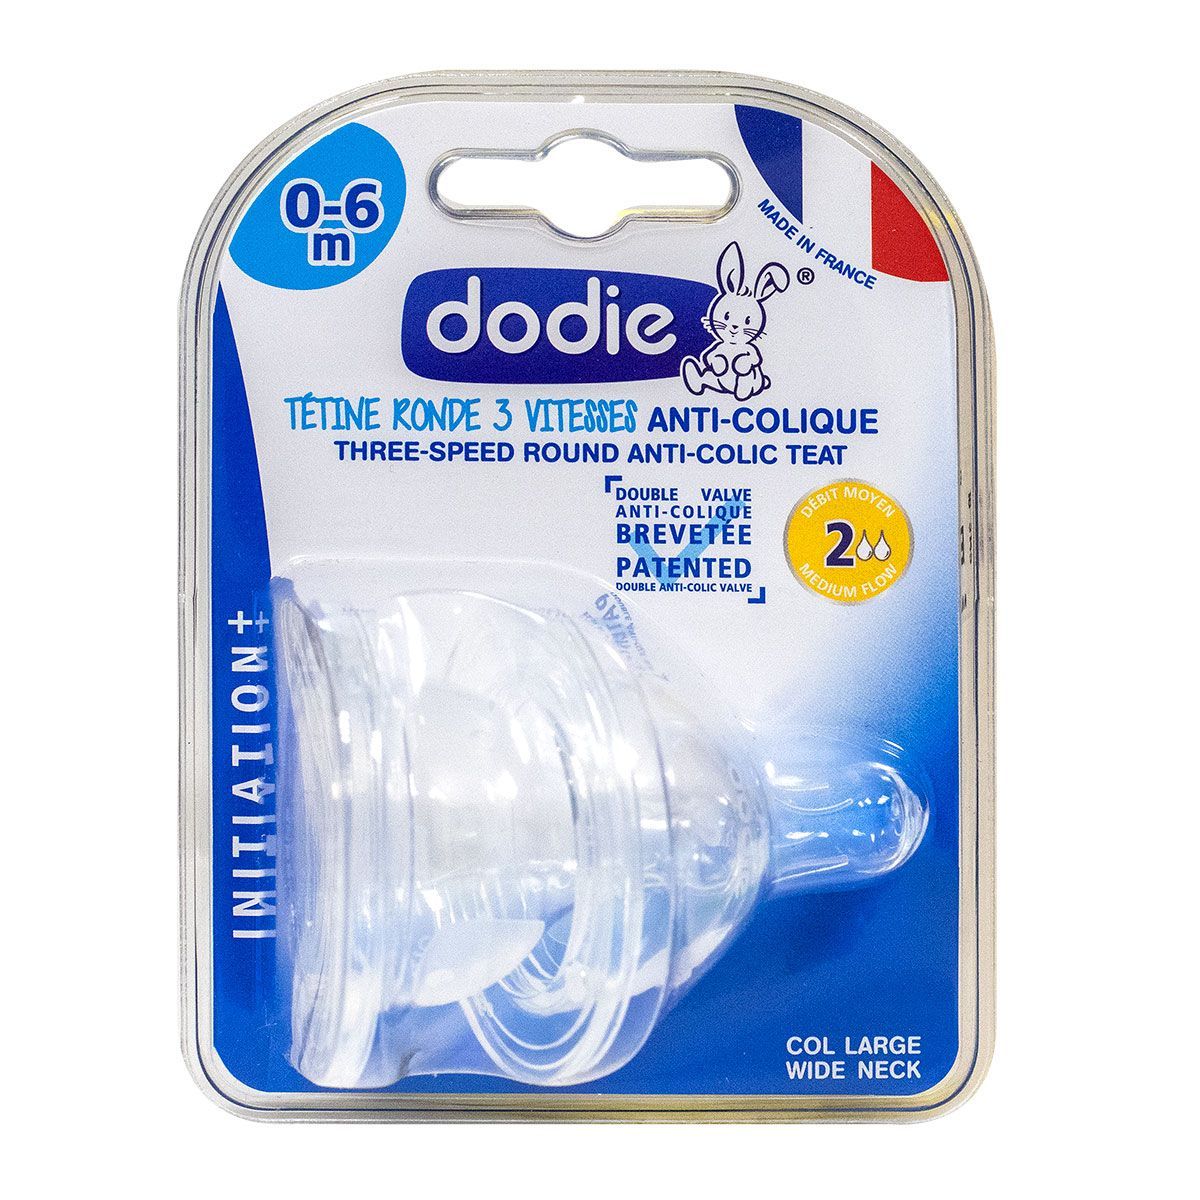 Dodie - Biberon anti-colique tétine ronde 3 vitesses 0-6 mois débit 1 -  biberon 150ml